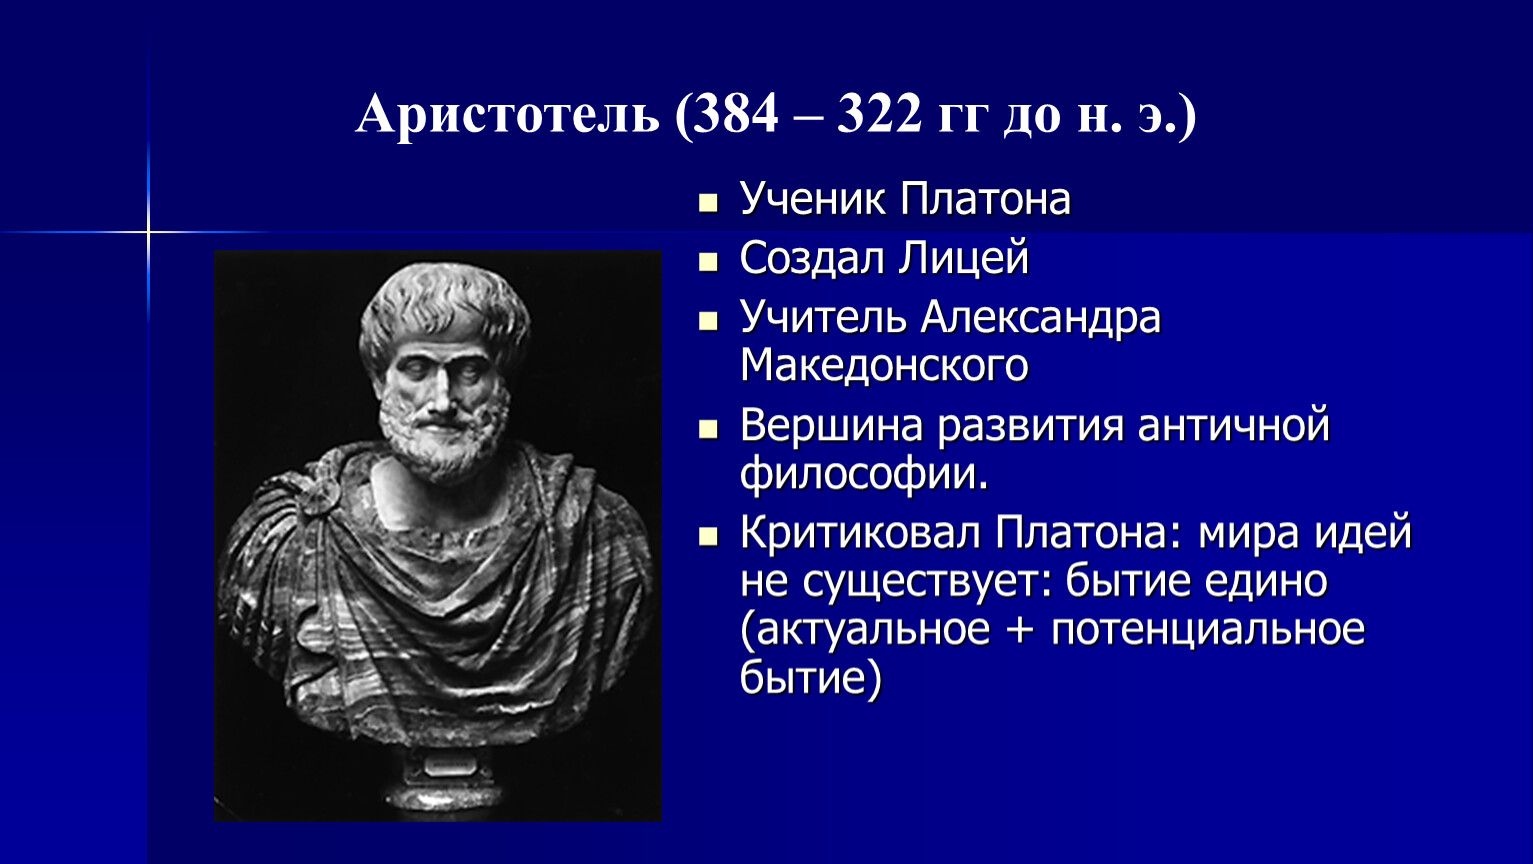 Сообщение о Аристотеле